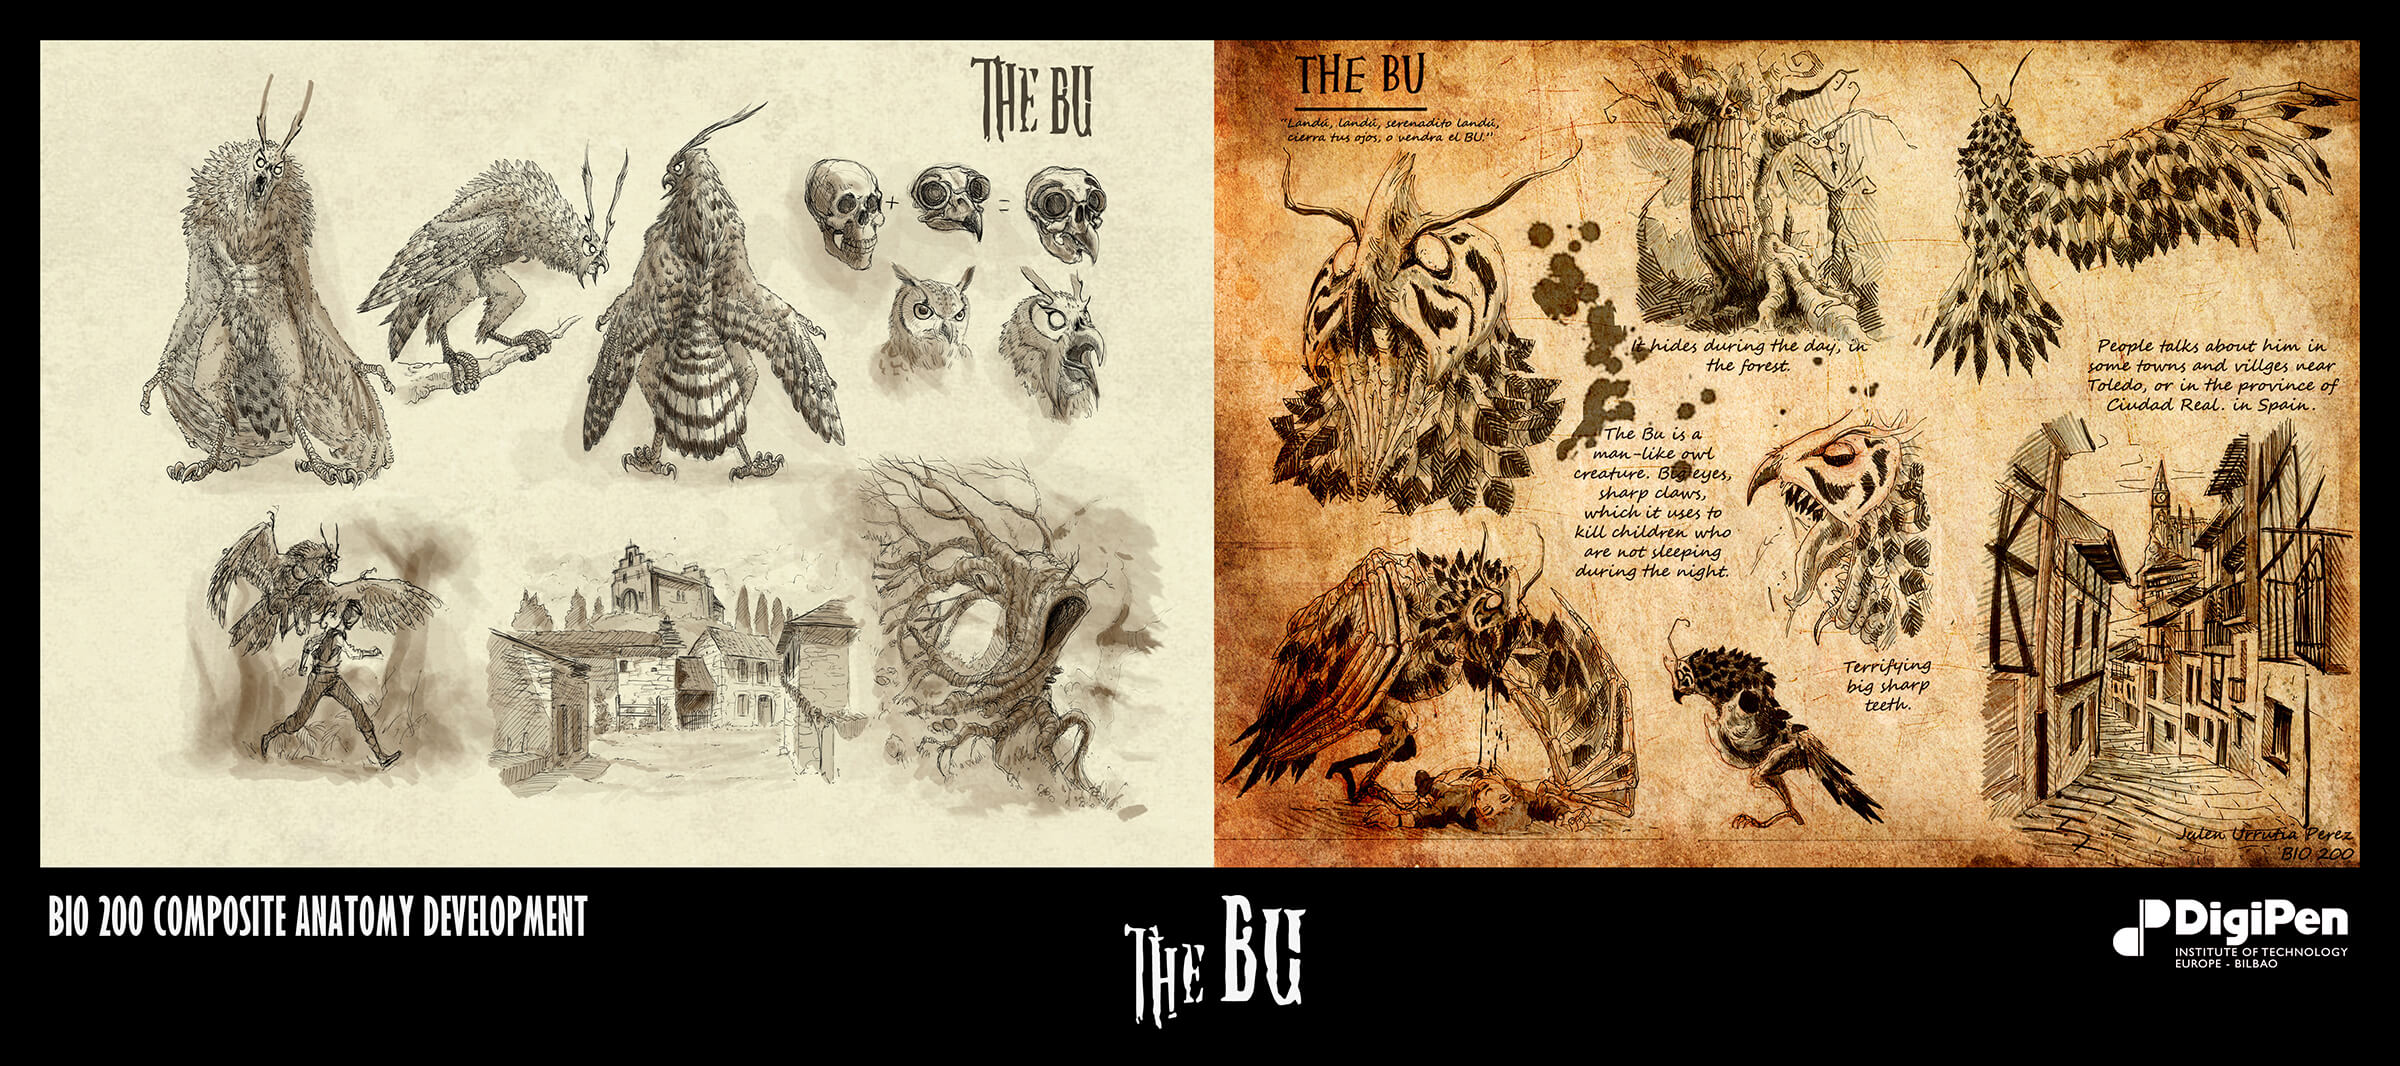 Bocetos en blanco y negro de una enorme bestia parecida a un búho, incluida su anatomía y la explicación de sus hábitos.